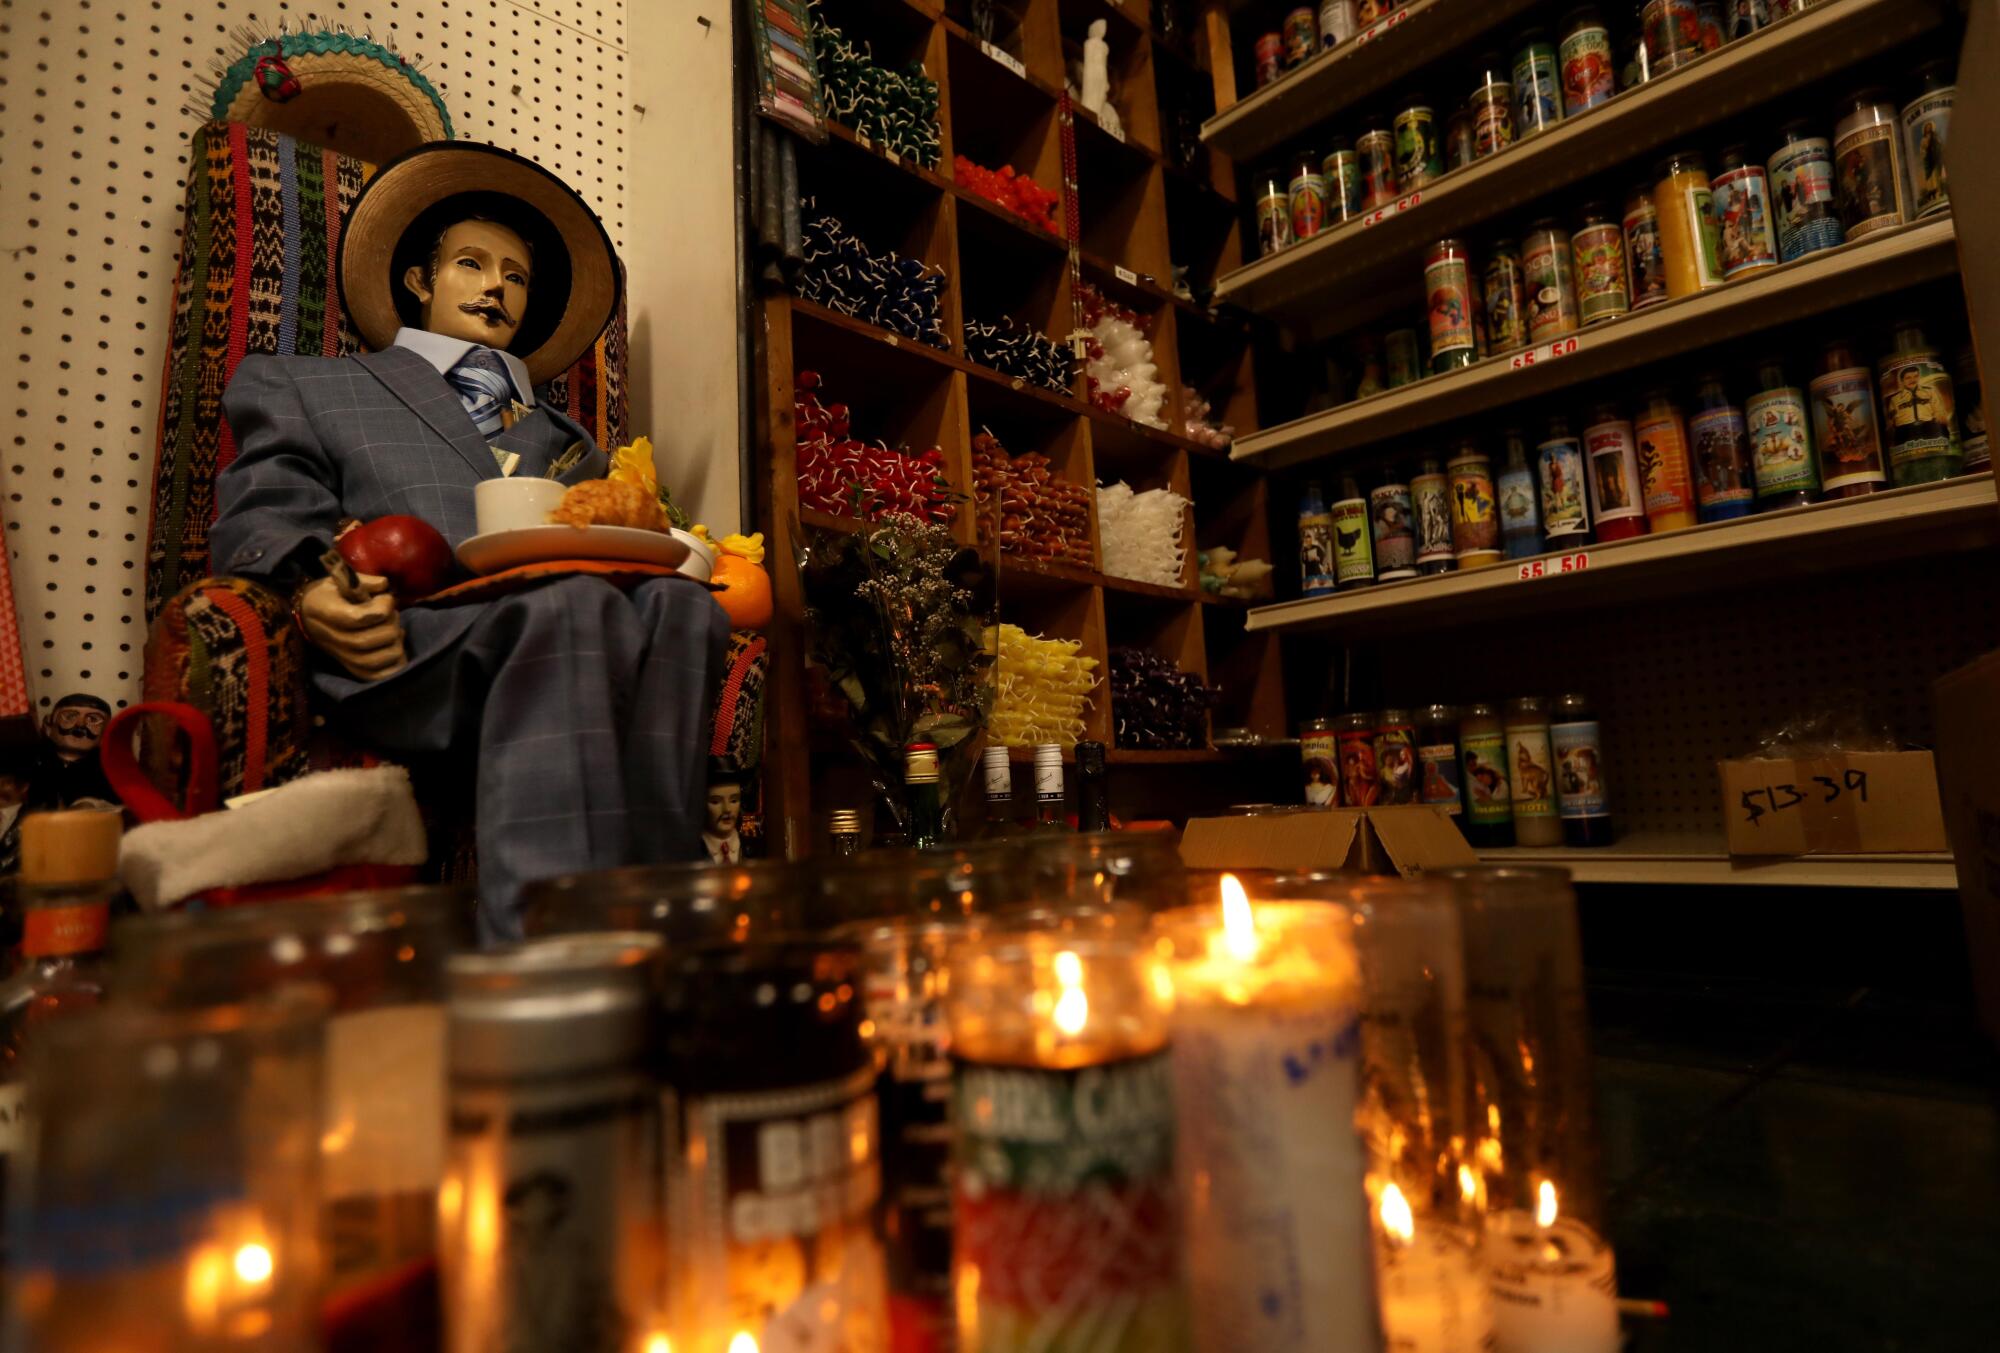 A display including candles and San Simon .